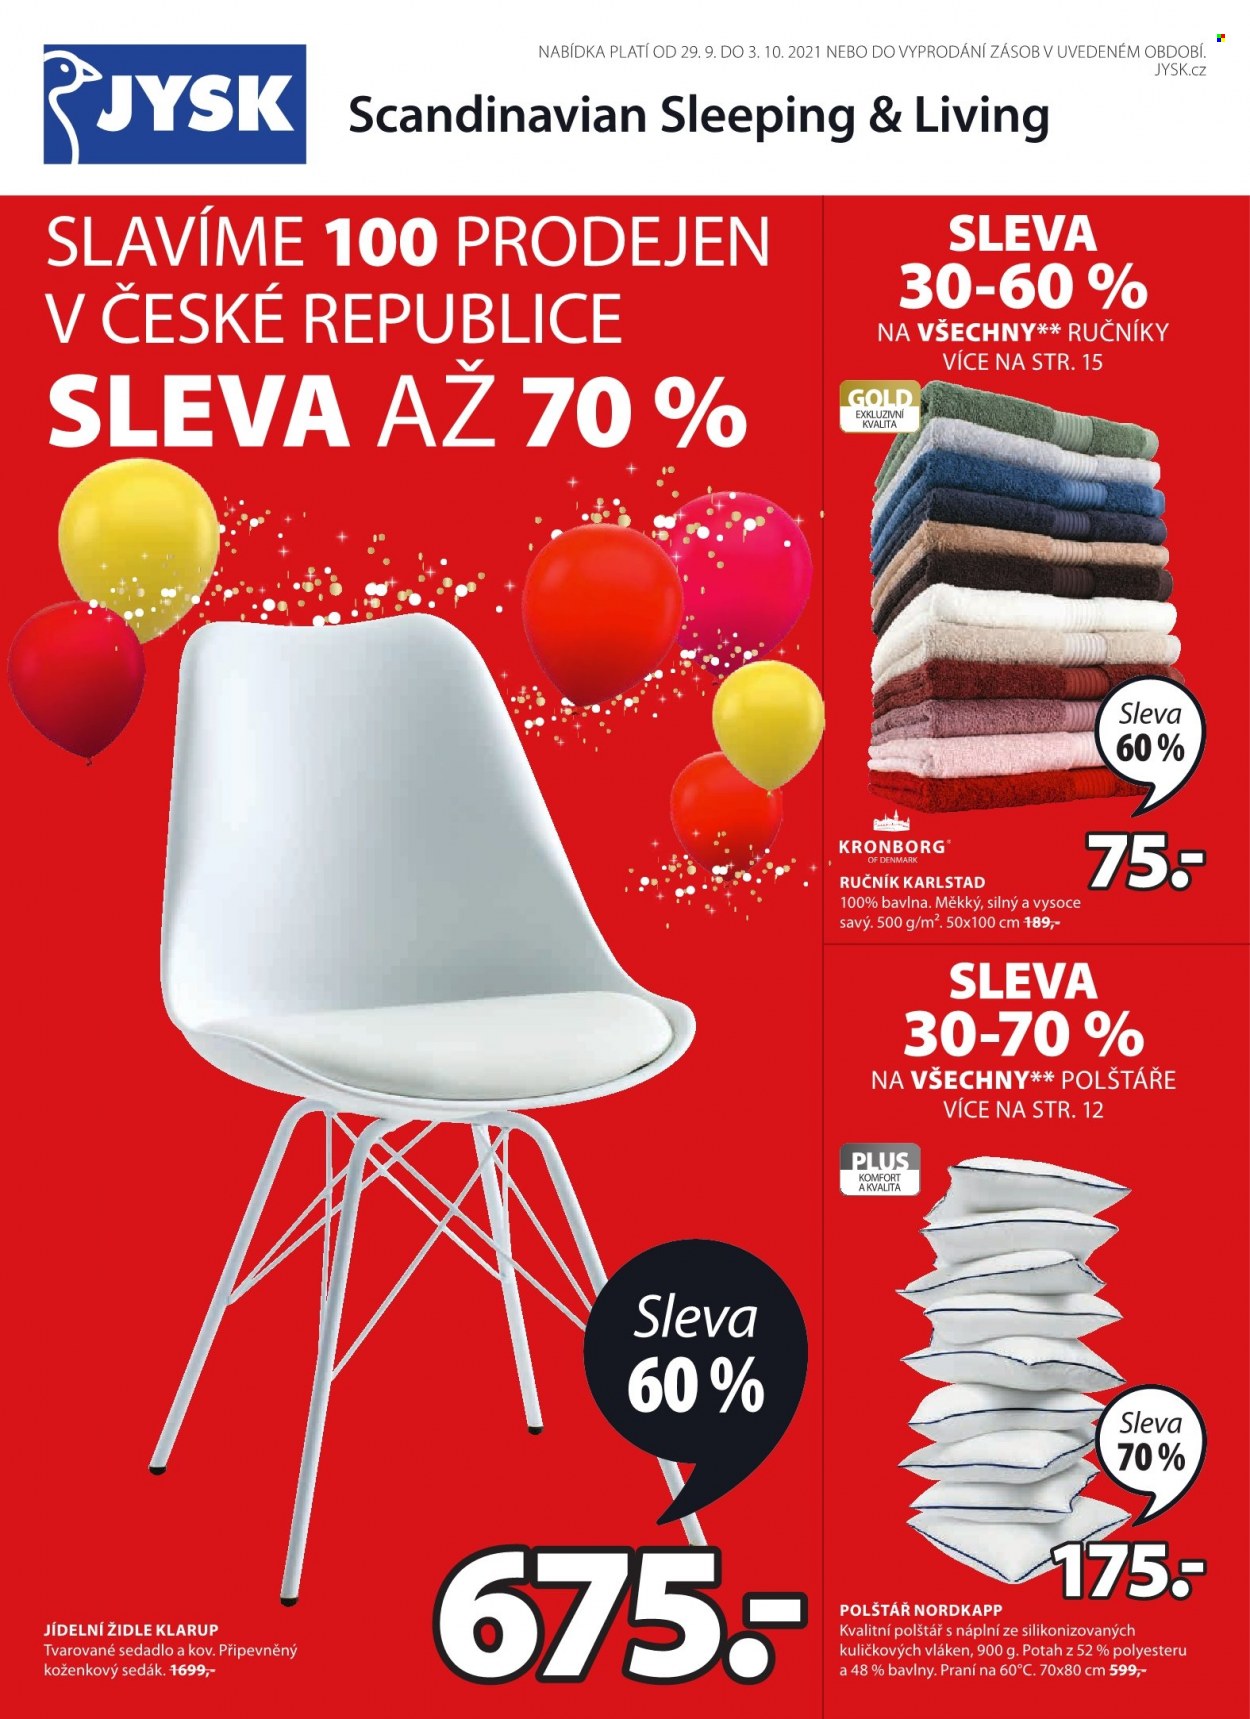 Leták JYSK - 29.9.2021 - 3.10.2021 - Produkty v akci - jídelní židle, židle, ručník, KRONBORG, potah. Strana 1.